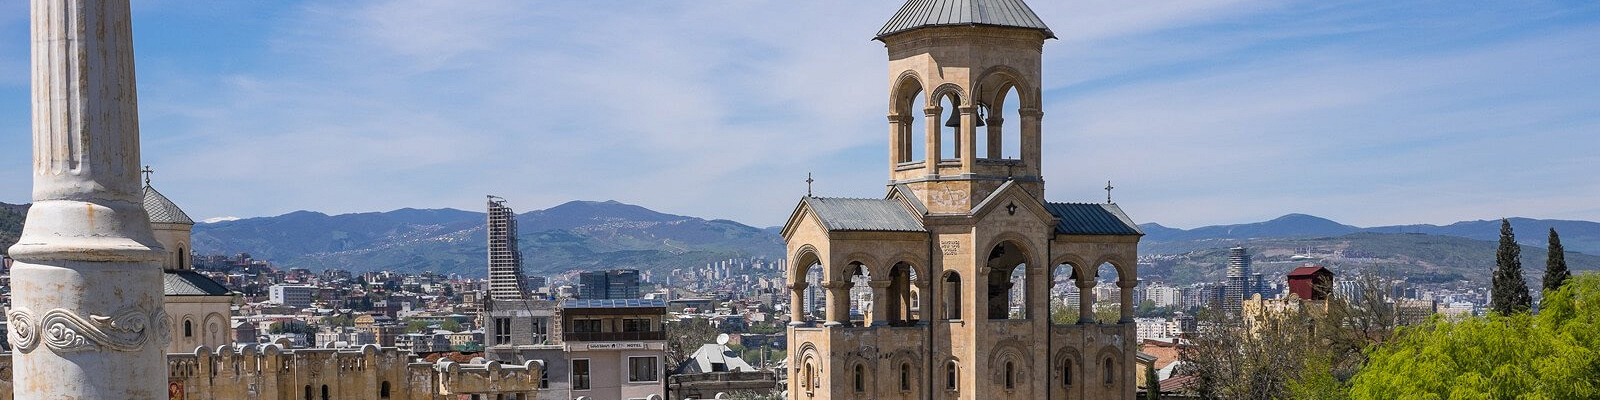 Тбилиси Достопримечательности Фото